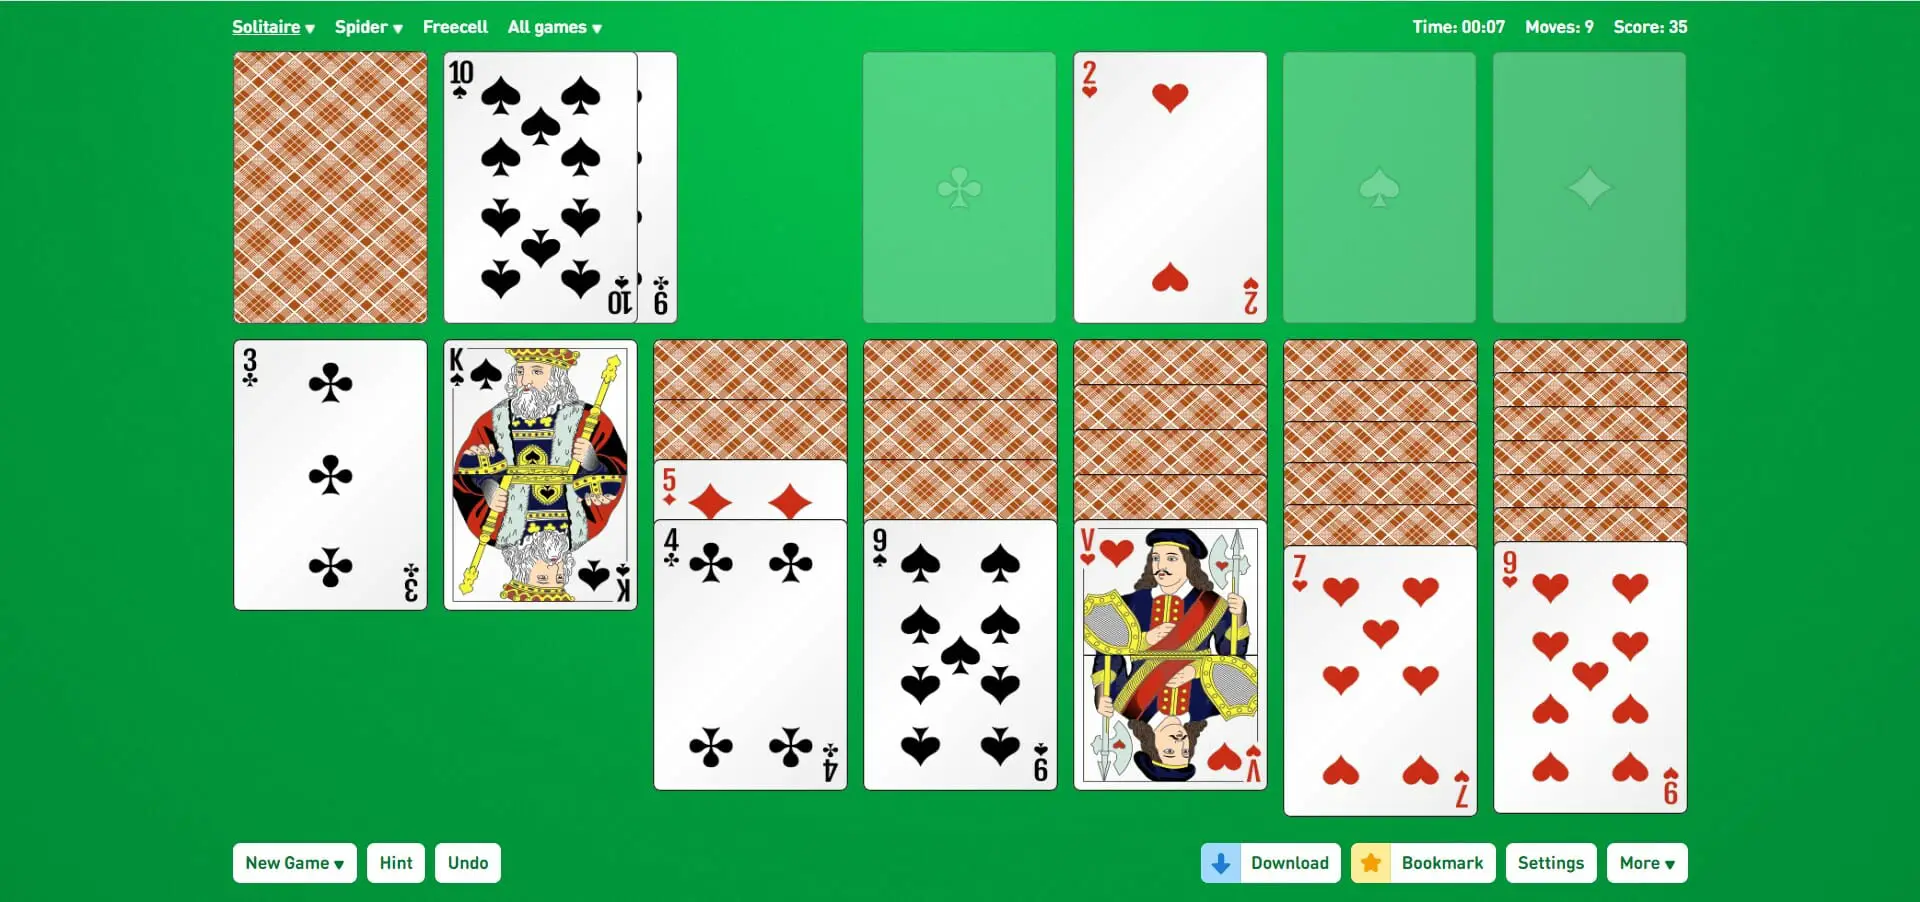 Juega Solitario: juego de cartas favorito ahora en línea gratis - Expertos Linea